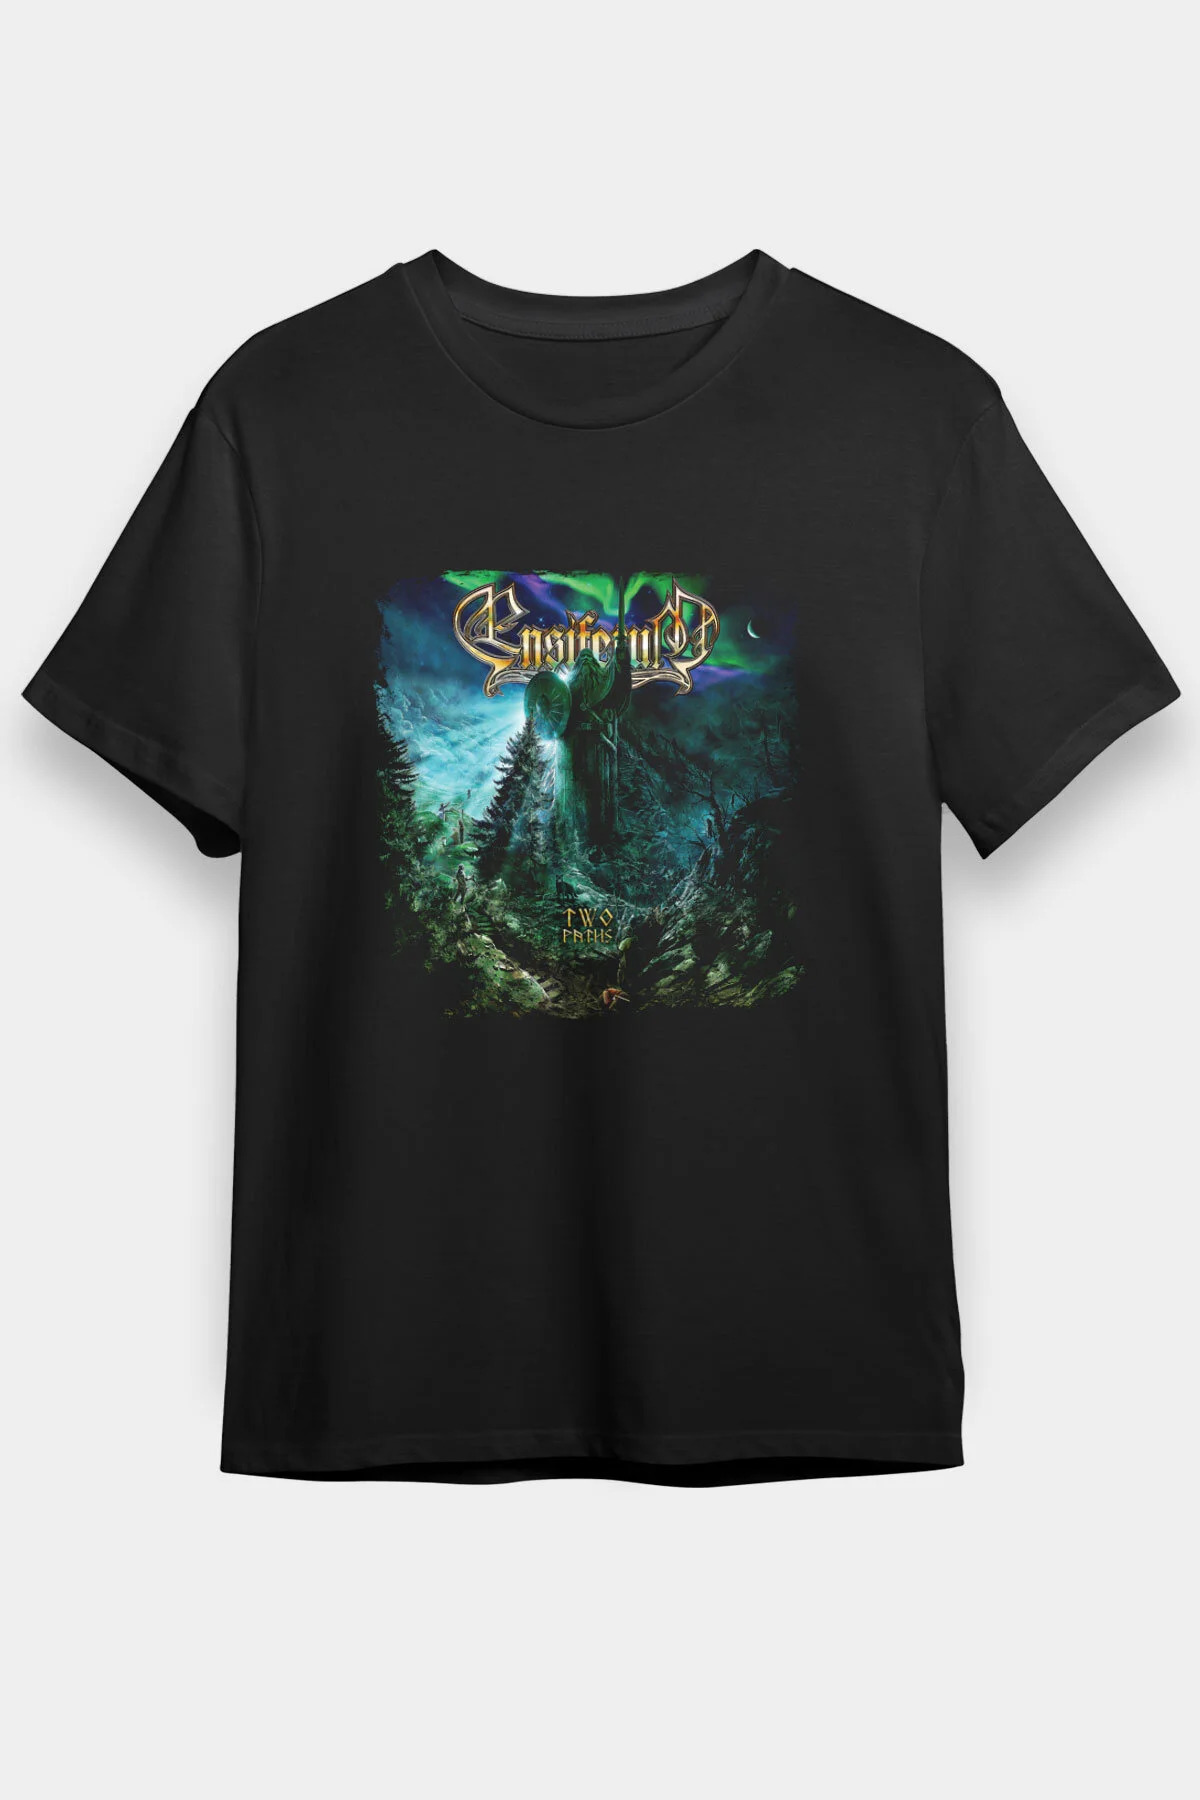 Ensiferum  T shirt , Music Band ,Unisex Tshirt 08